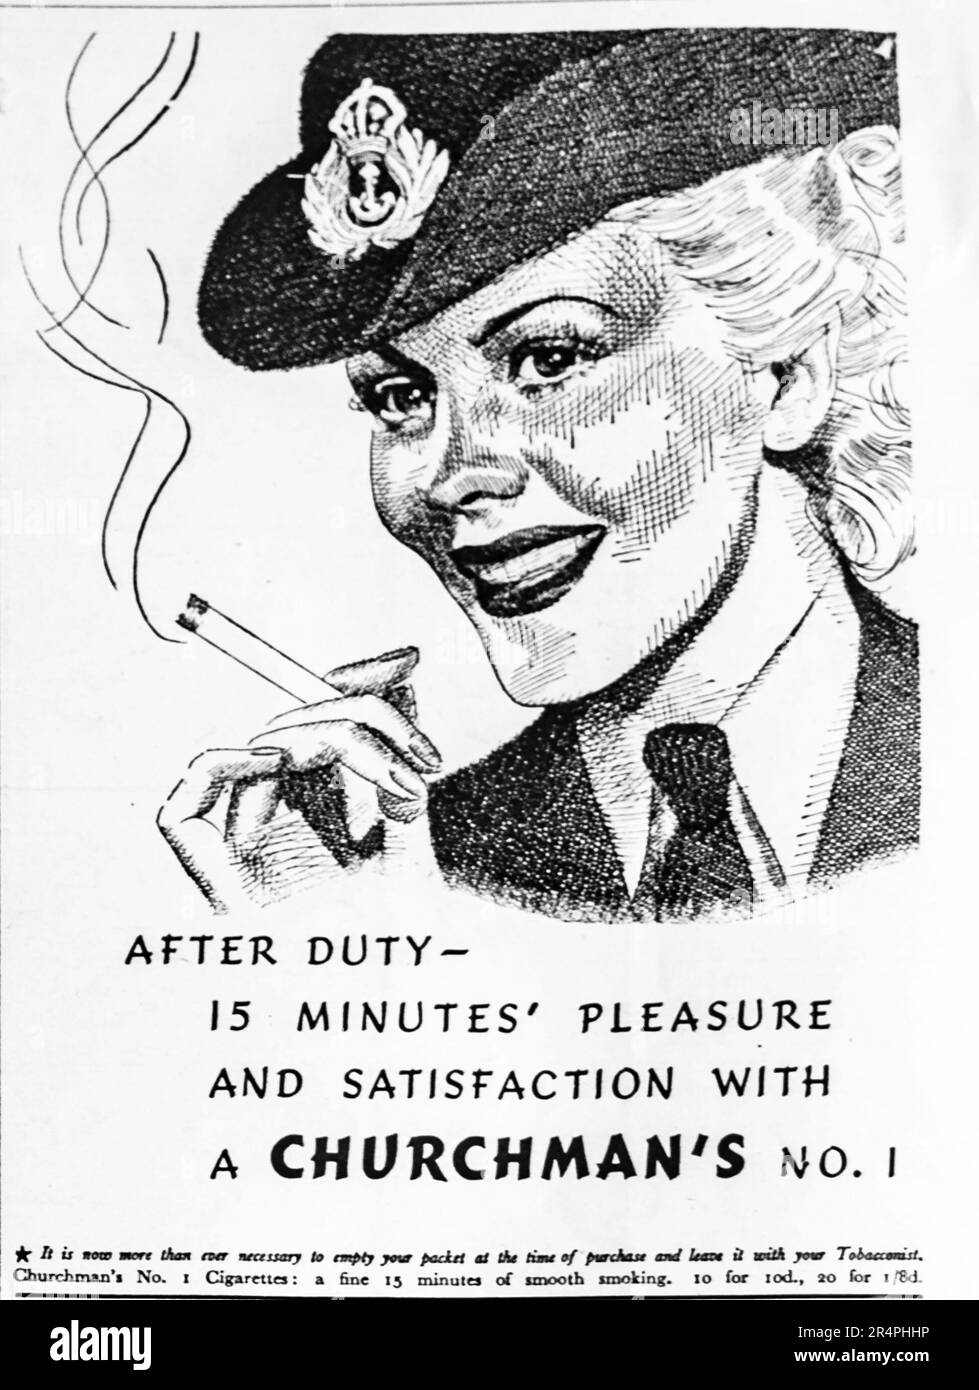 A1942 Werbung für Churchman's No 1 Zigaretten. Das in Ipswich hergestellte Unternehmen produzierte 1965 täglich eine Million Zigaretten und beschäftigte über 1000 Mitarbeiter. Das Unternehmen schloss schließlich im Jahr 1992. In diesem Werbespot zur Kriegszeit wird immer vorgeschlagen, die Verpackung beim Kauf zu leeren und beim Ladenbesitzer zu lassen, vermutlich um Engpässe in Kriegszeiten zu bewältigen. Eine frühe Form des Recyclings. Stockfoto